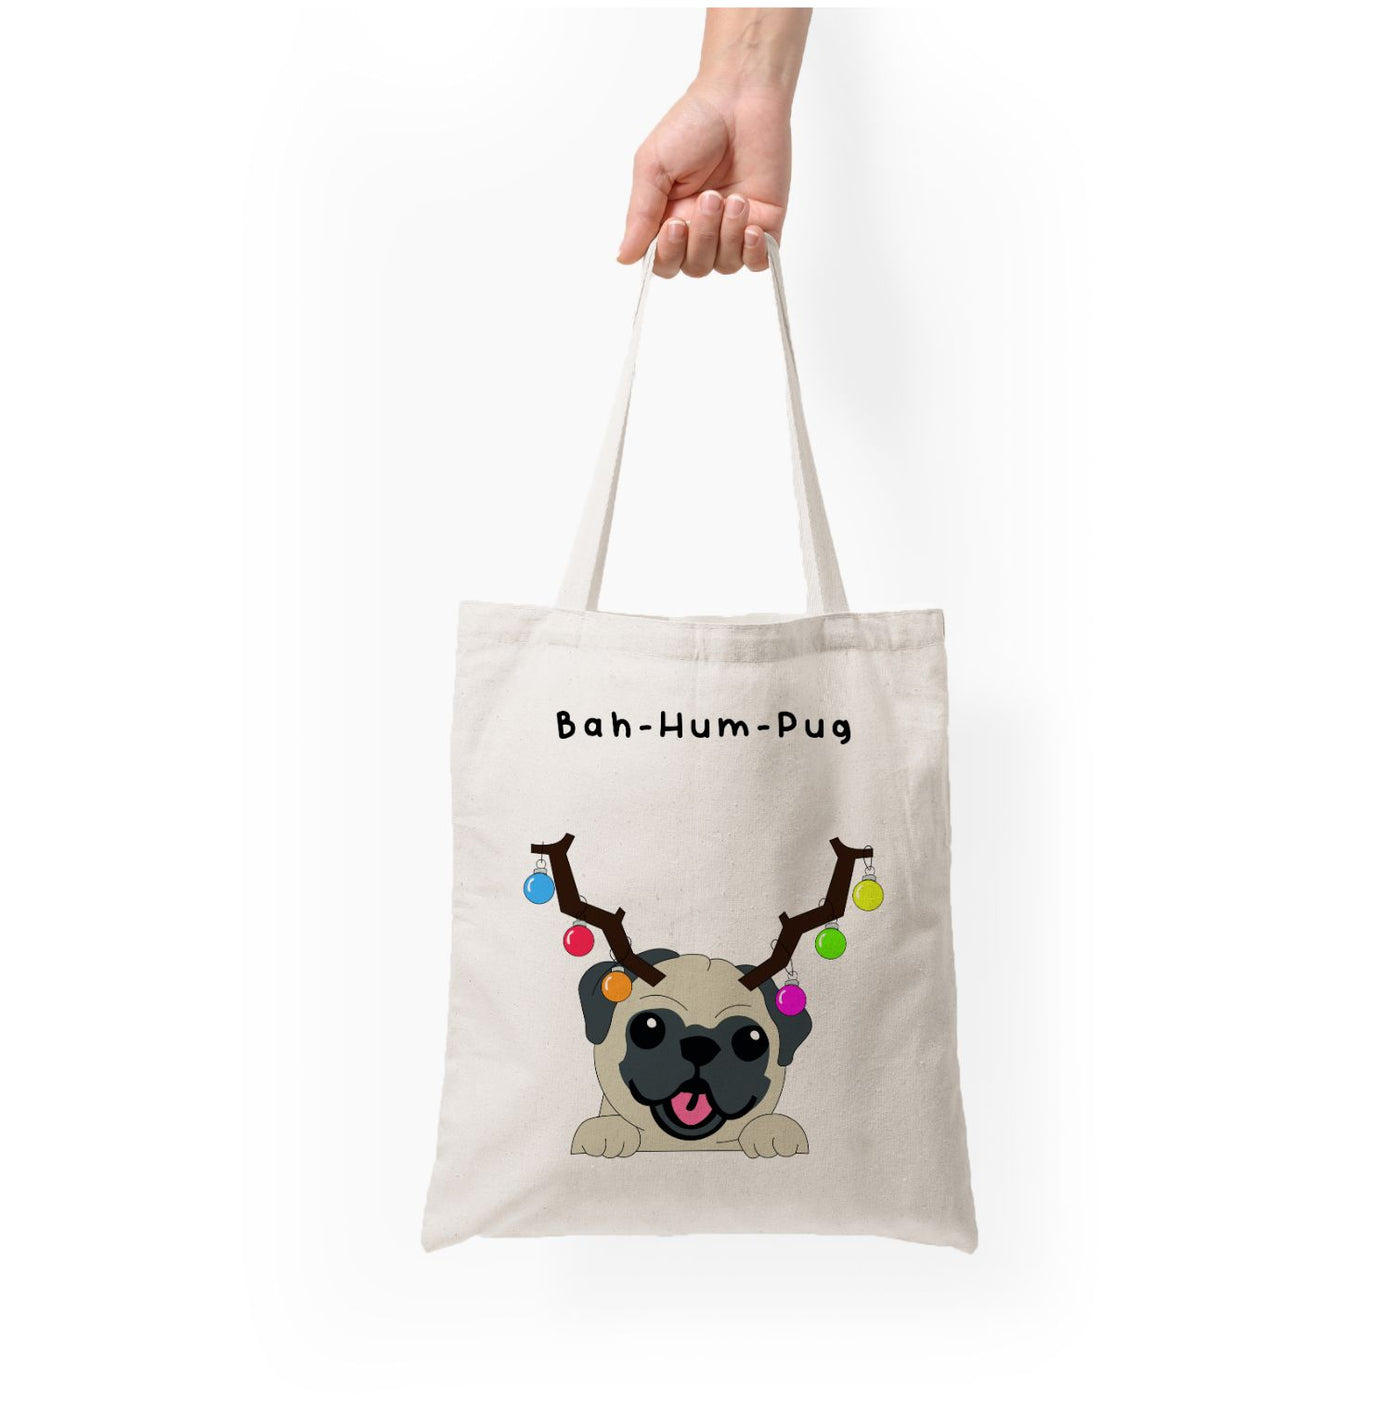 Buh-hum-pug - Christmas Tote Bag